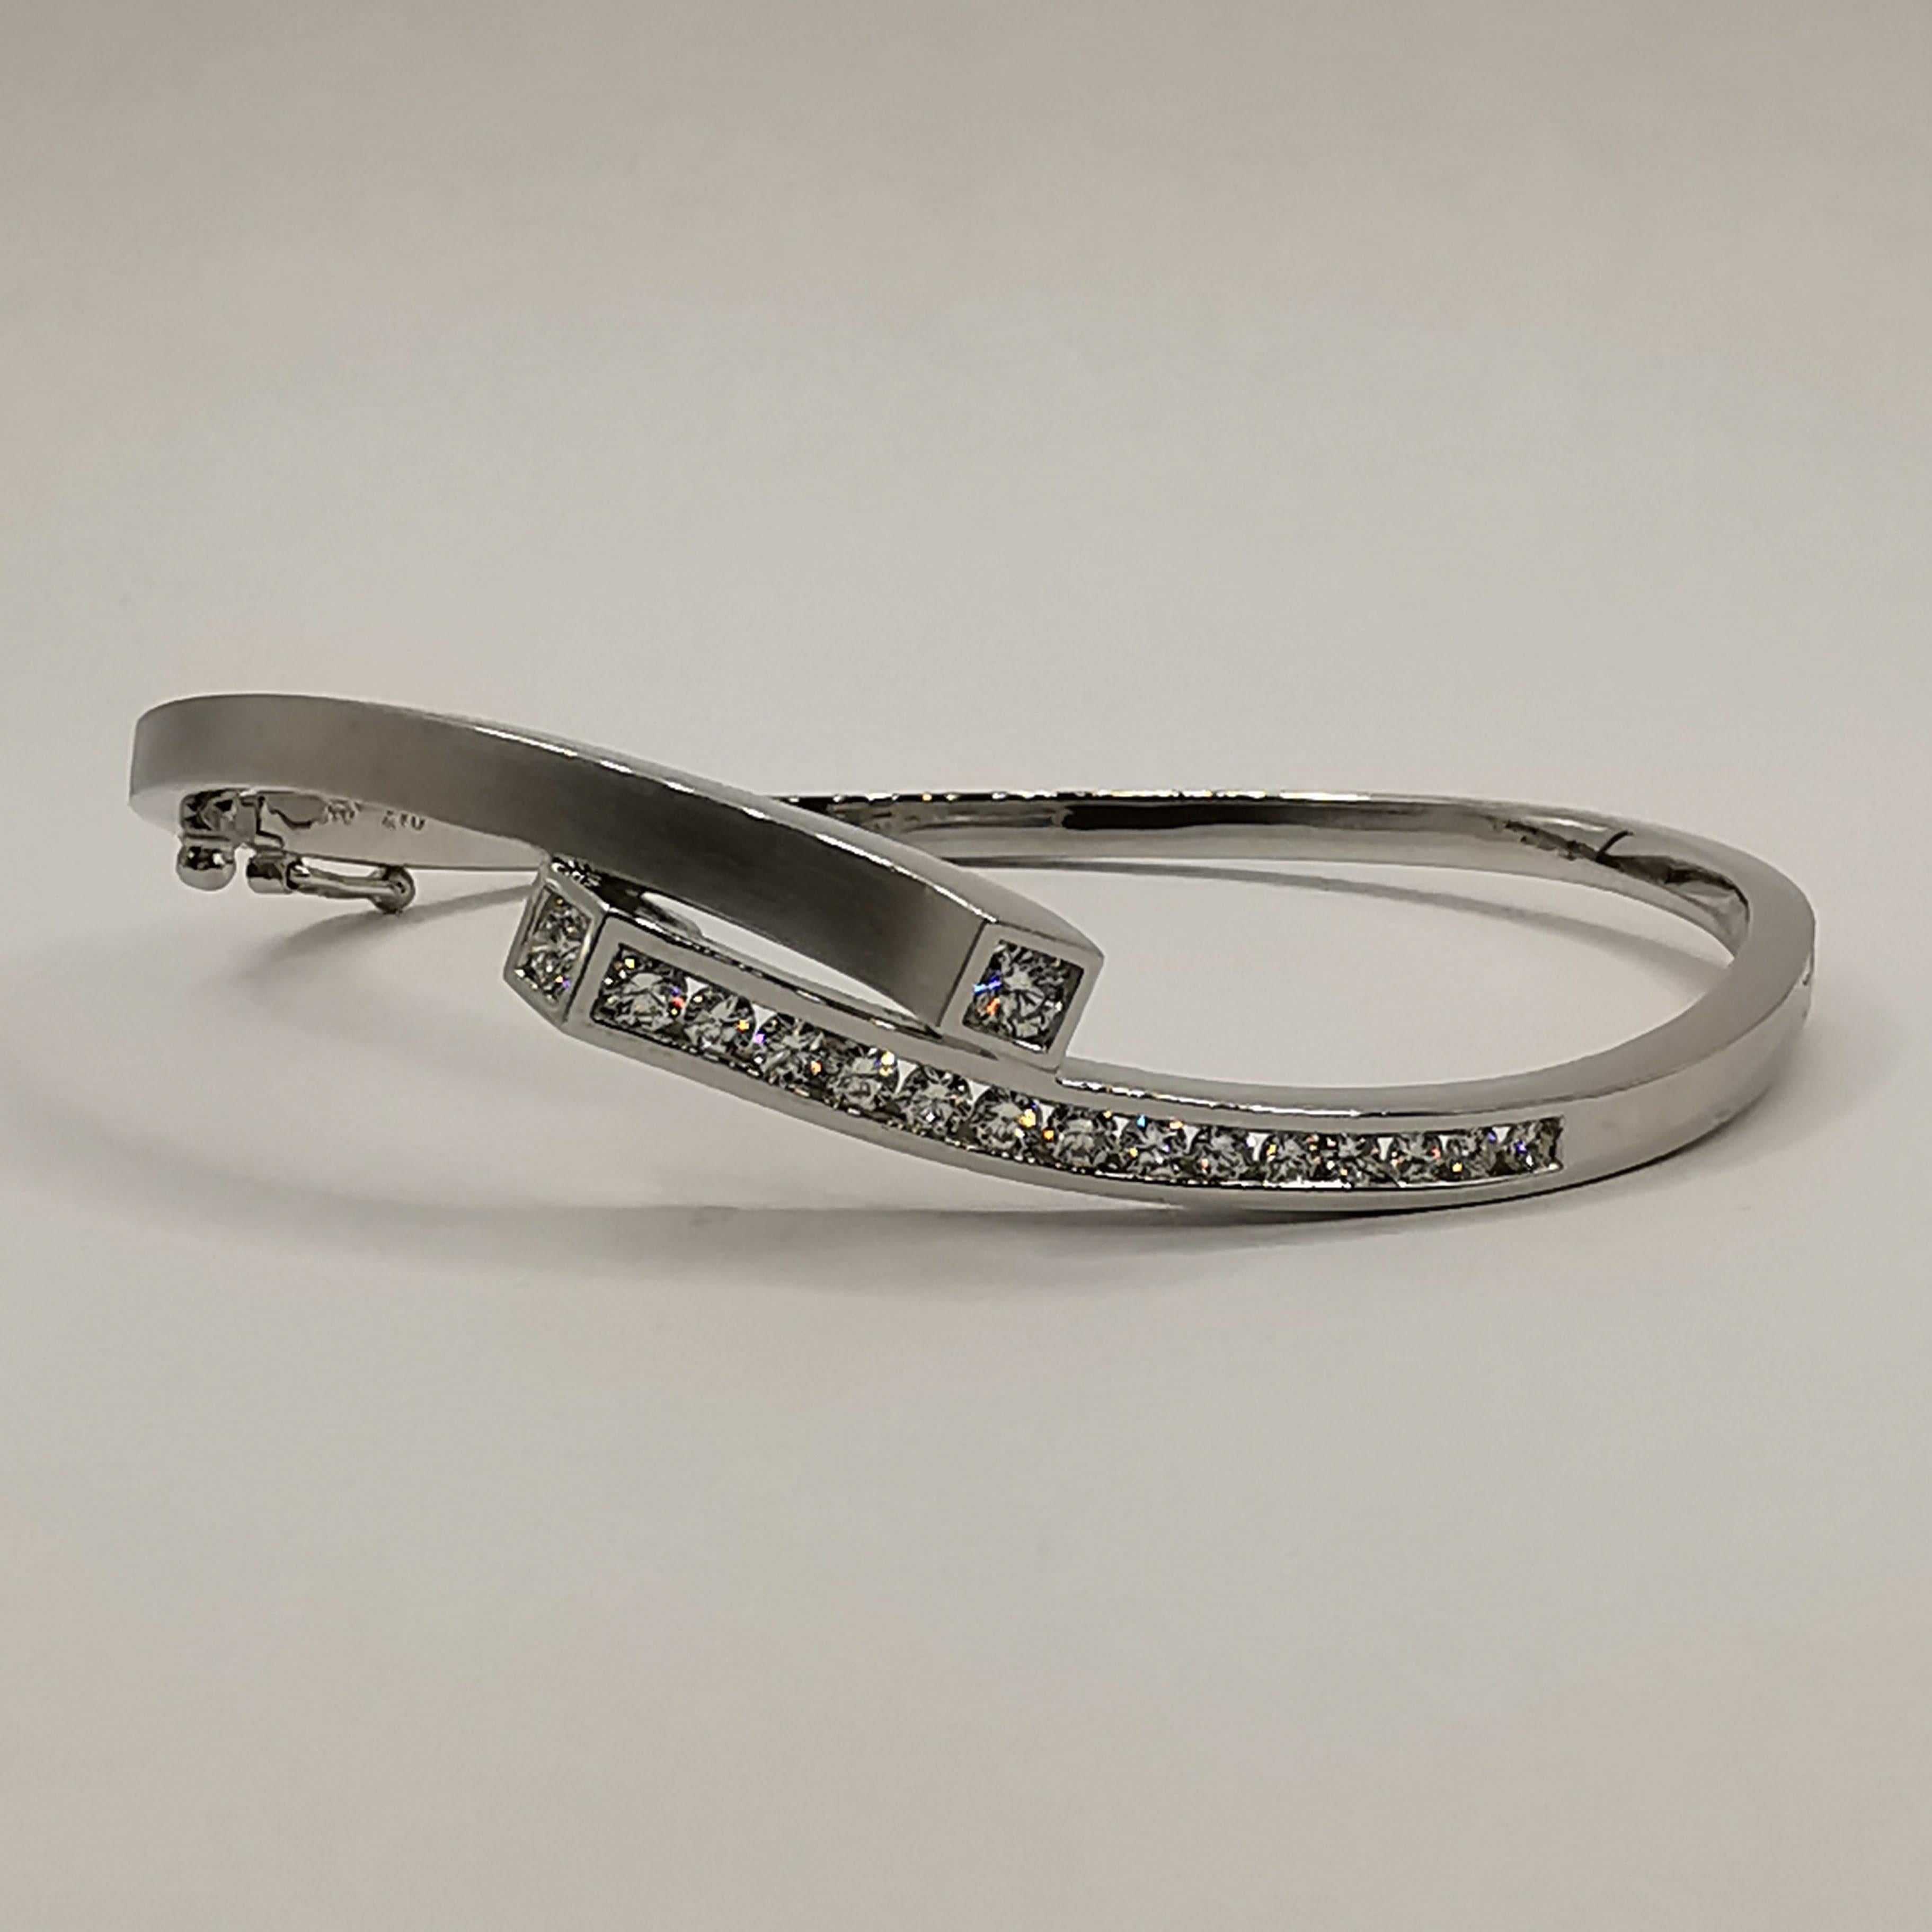 Ce luxueux bracelet à diamants est une véritable pièce maîtresse qui ajoutera une touche de glamour et de sophistication à toutes vos tenues. Fabriqué en or blanc 18 carats, ce bracelet présente un design épuré et élégant qui ne manquera pas de